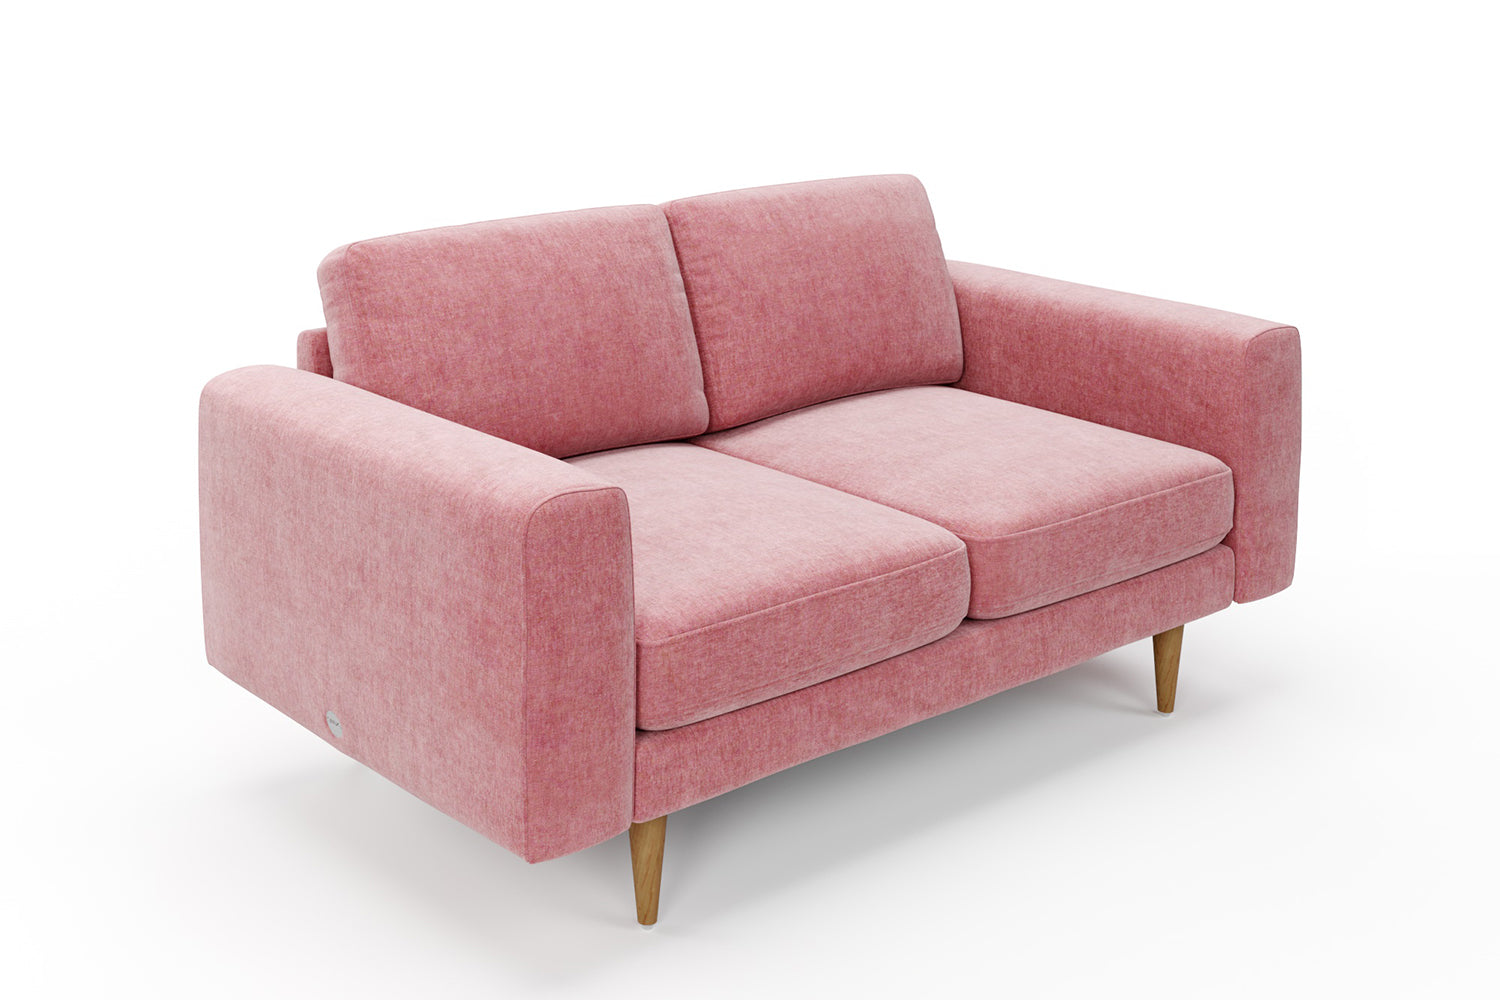 SNUG | The Big Chill 2 Seater Sofa in Blush Coral 